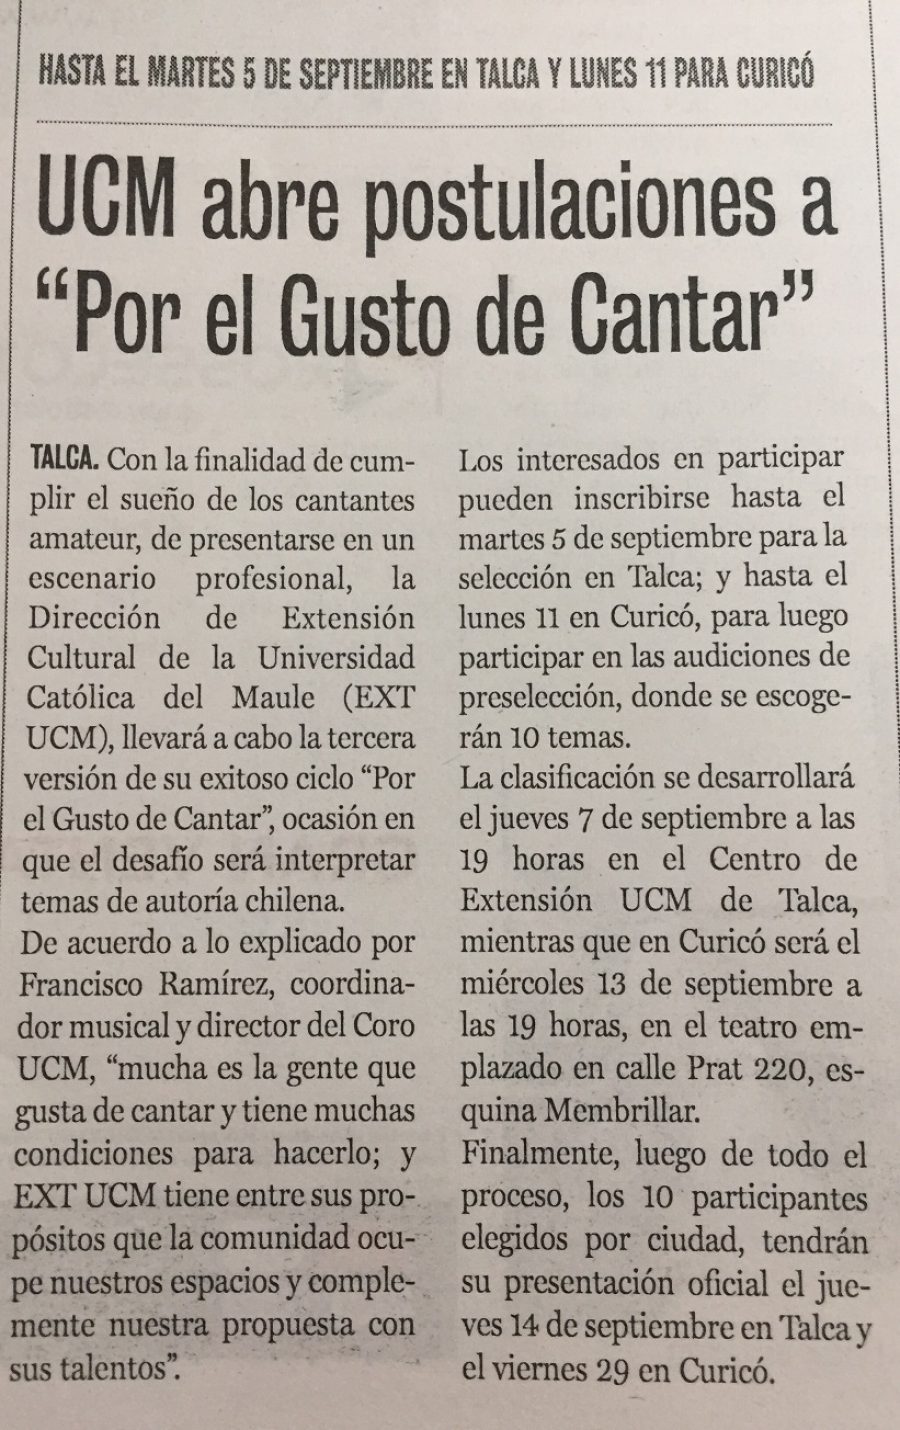 25 de agosto en Diario La Prensa: “UCM abre postulaciones a “Por el Gusto de Cantar”